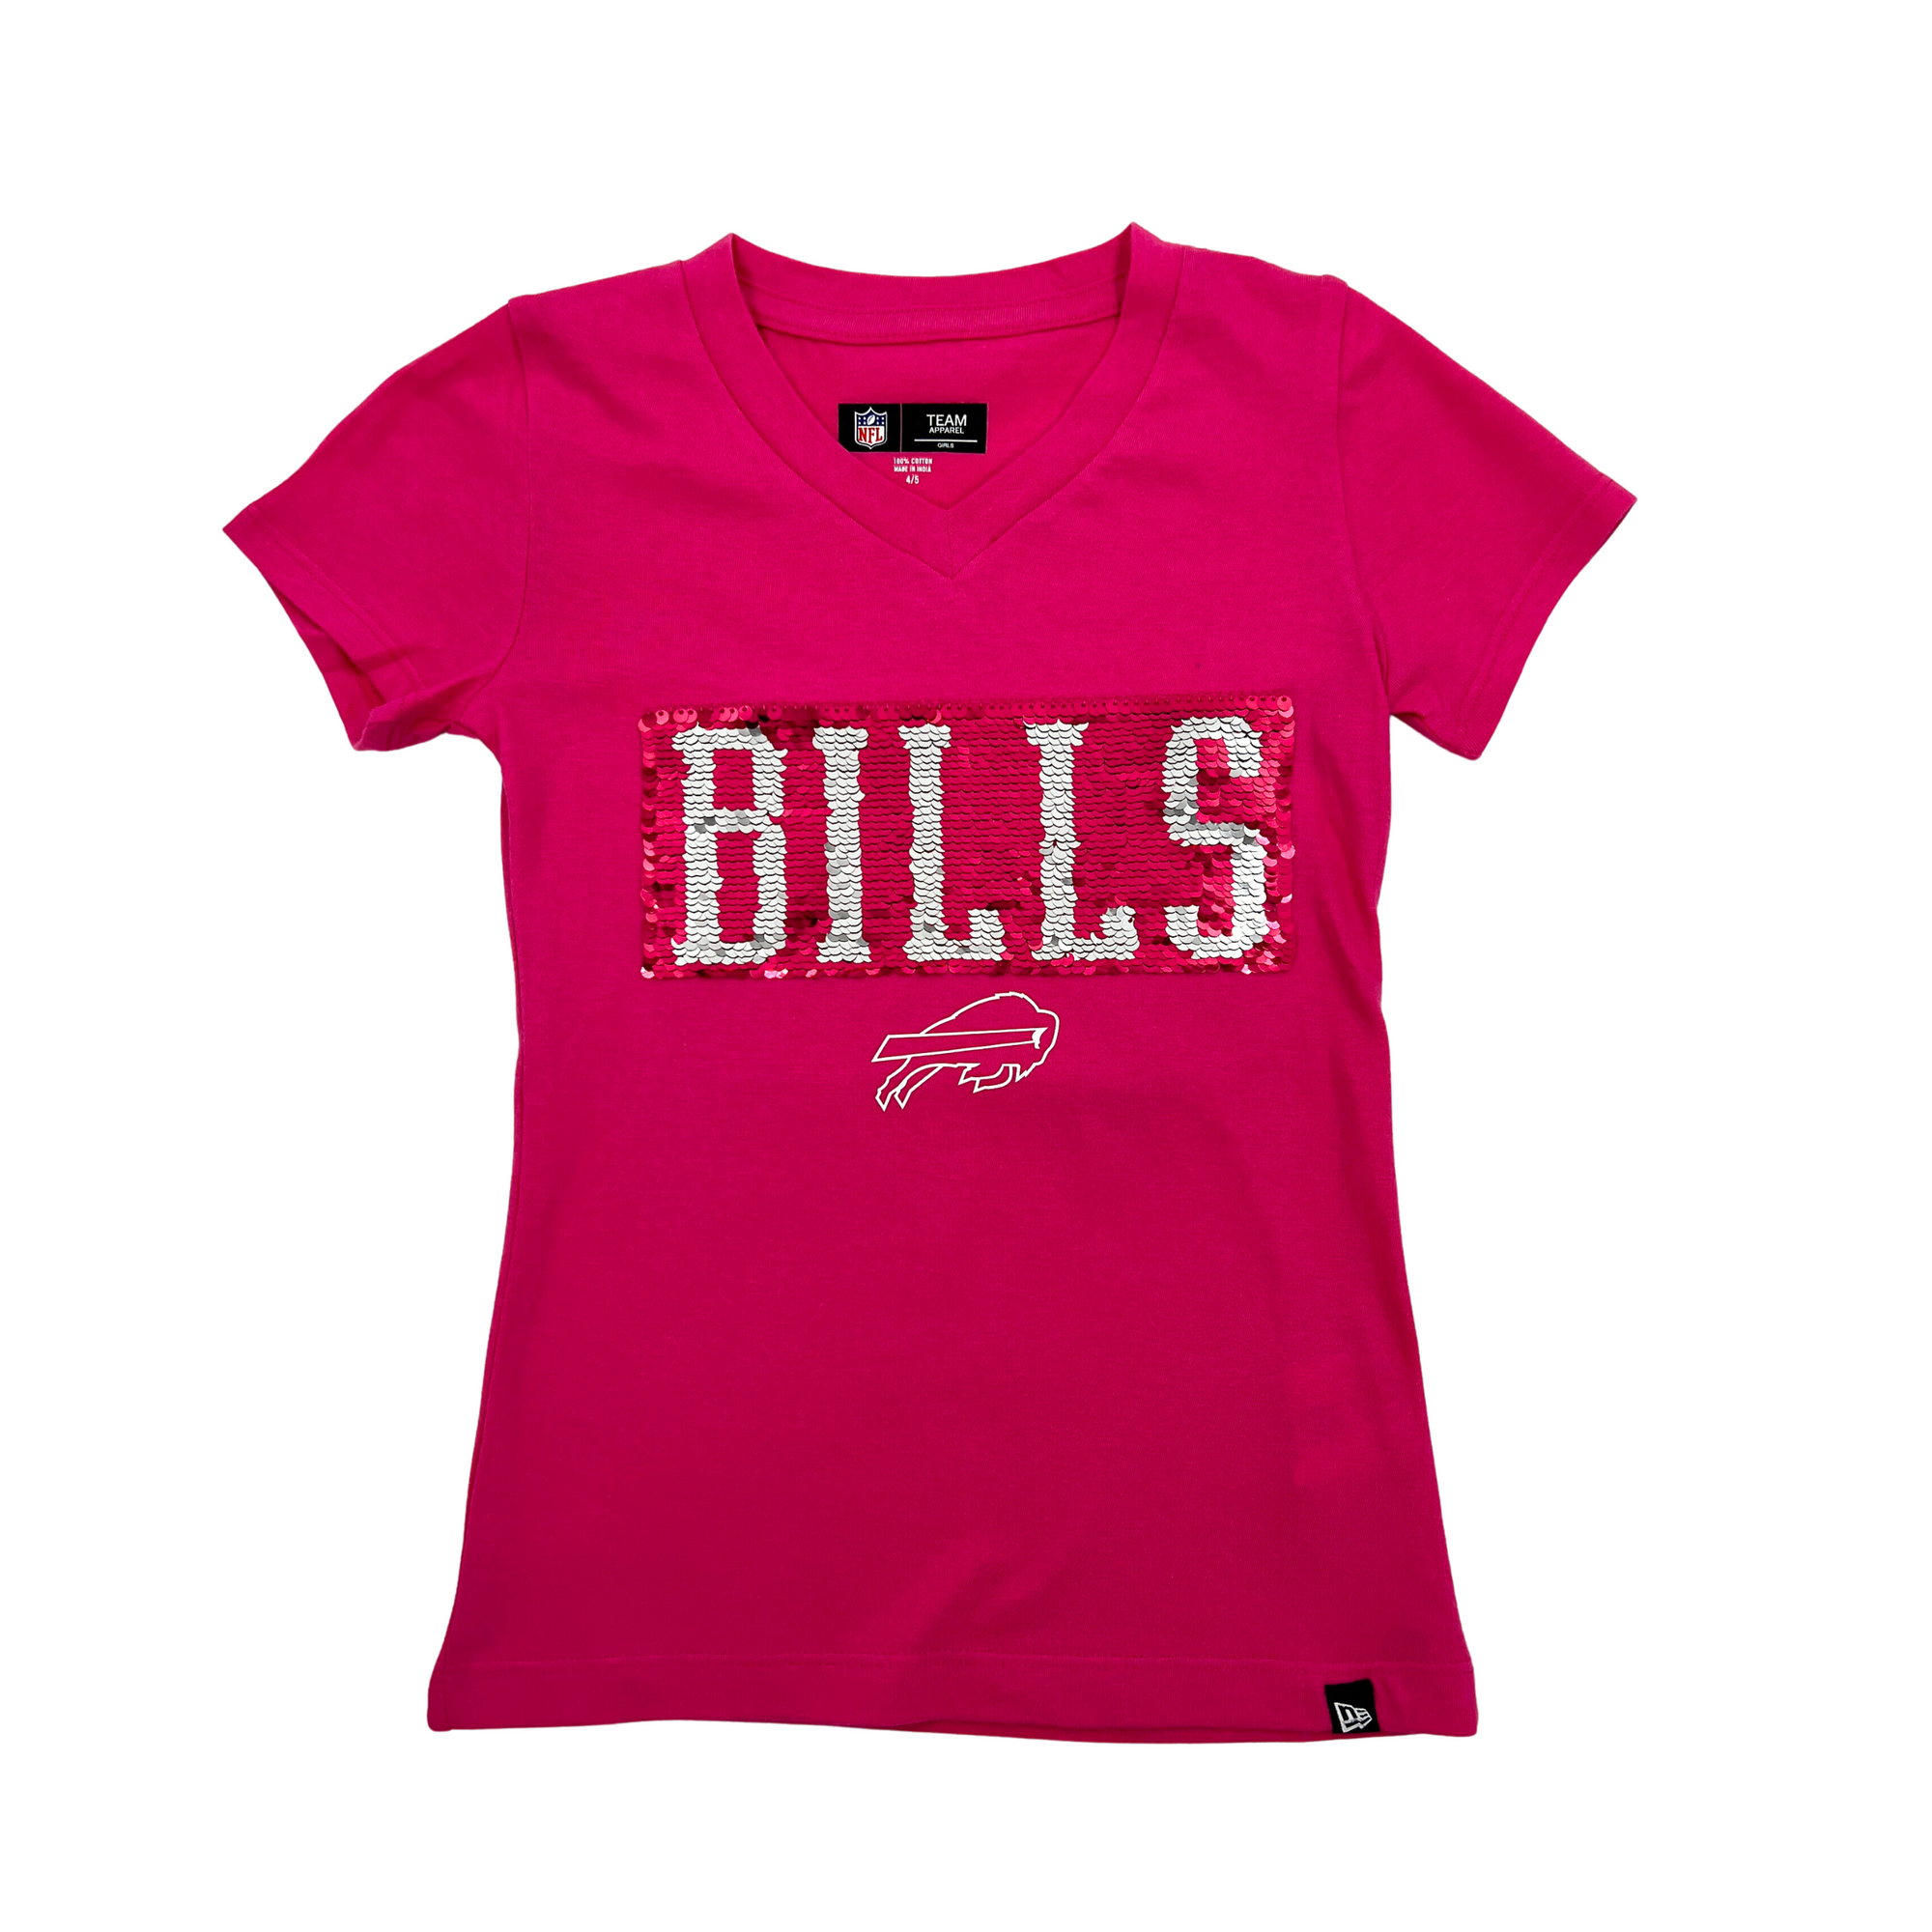 New Era Little Kids' Buffalo Bills Script Red Long Sleeve T-Shirt